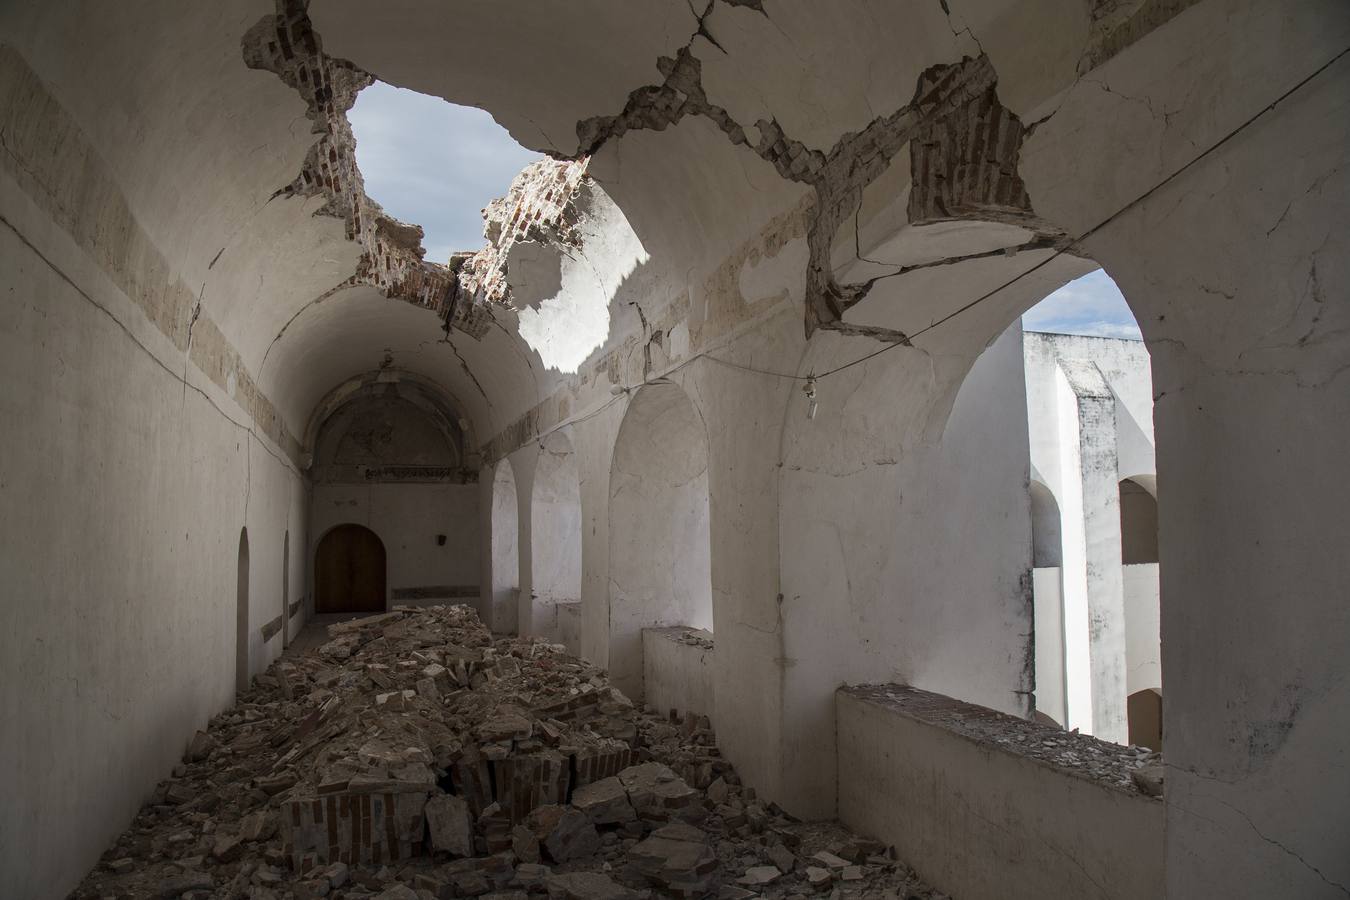 Restauración de iglesias en México trata de devolver 'identidad' tras los sismos